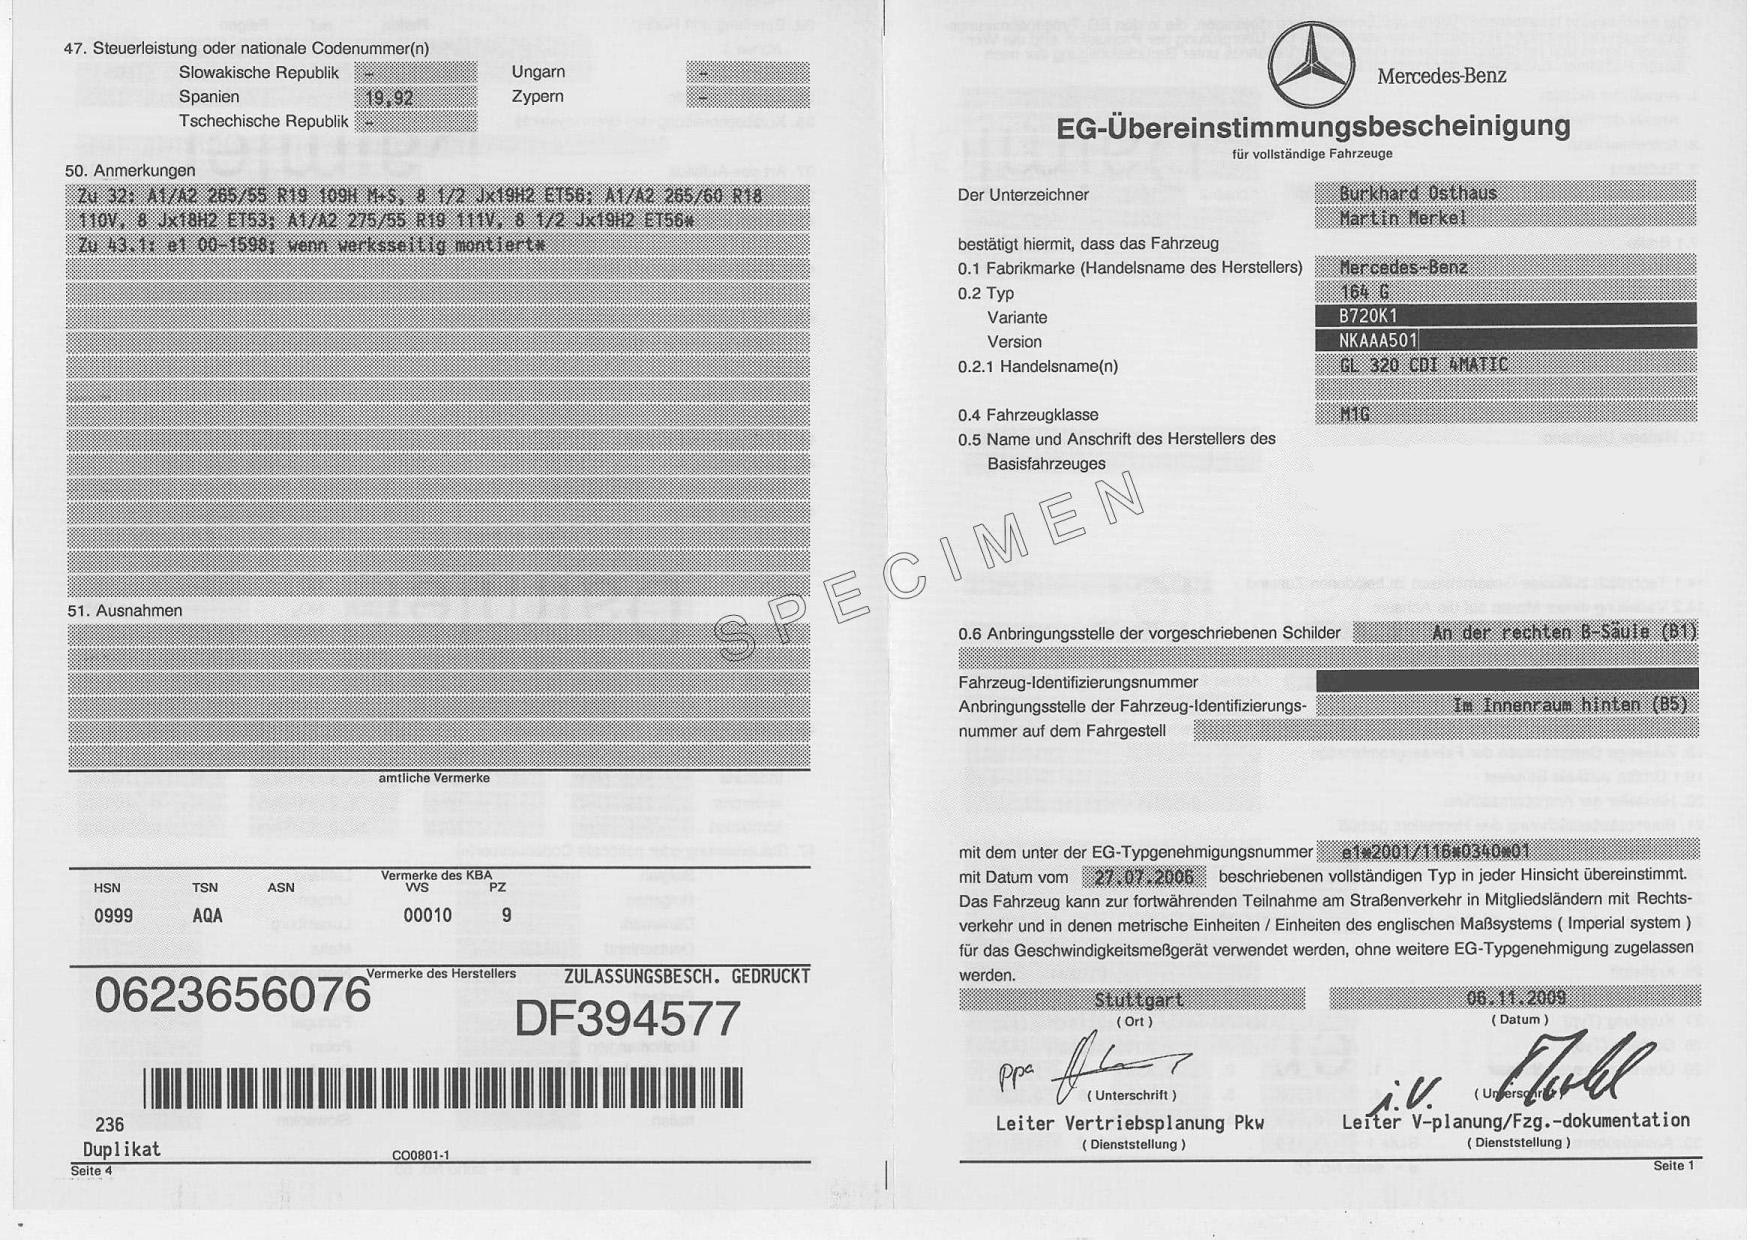 Obtenir un certificat de conformité européen pour une Mercedes-Benz